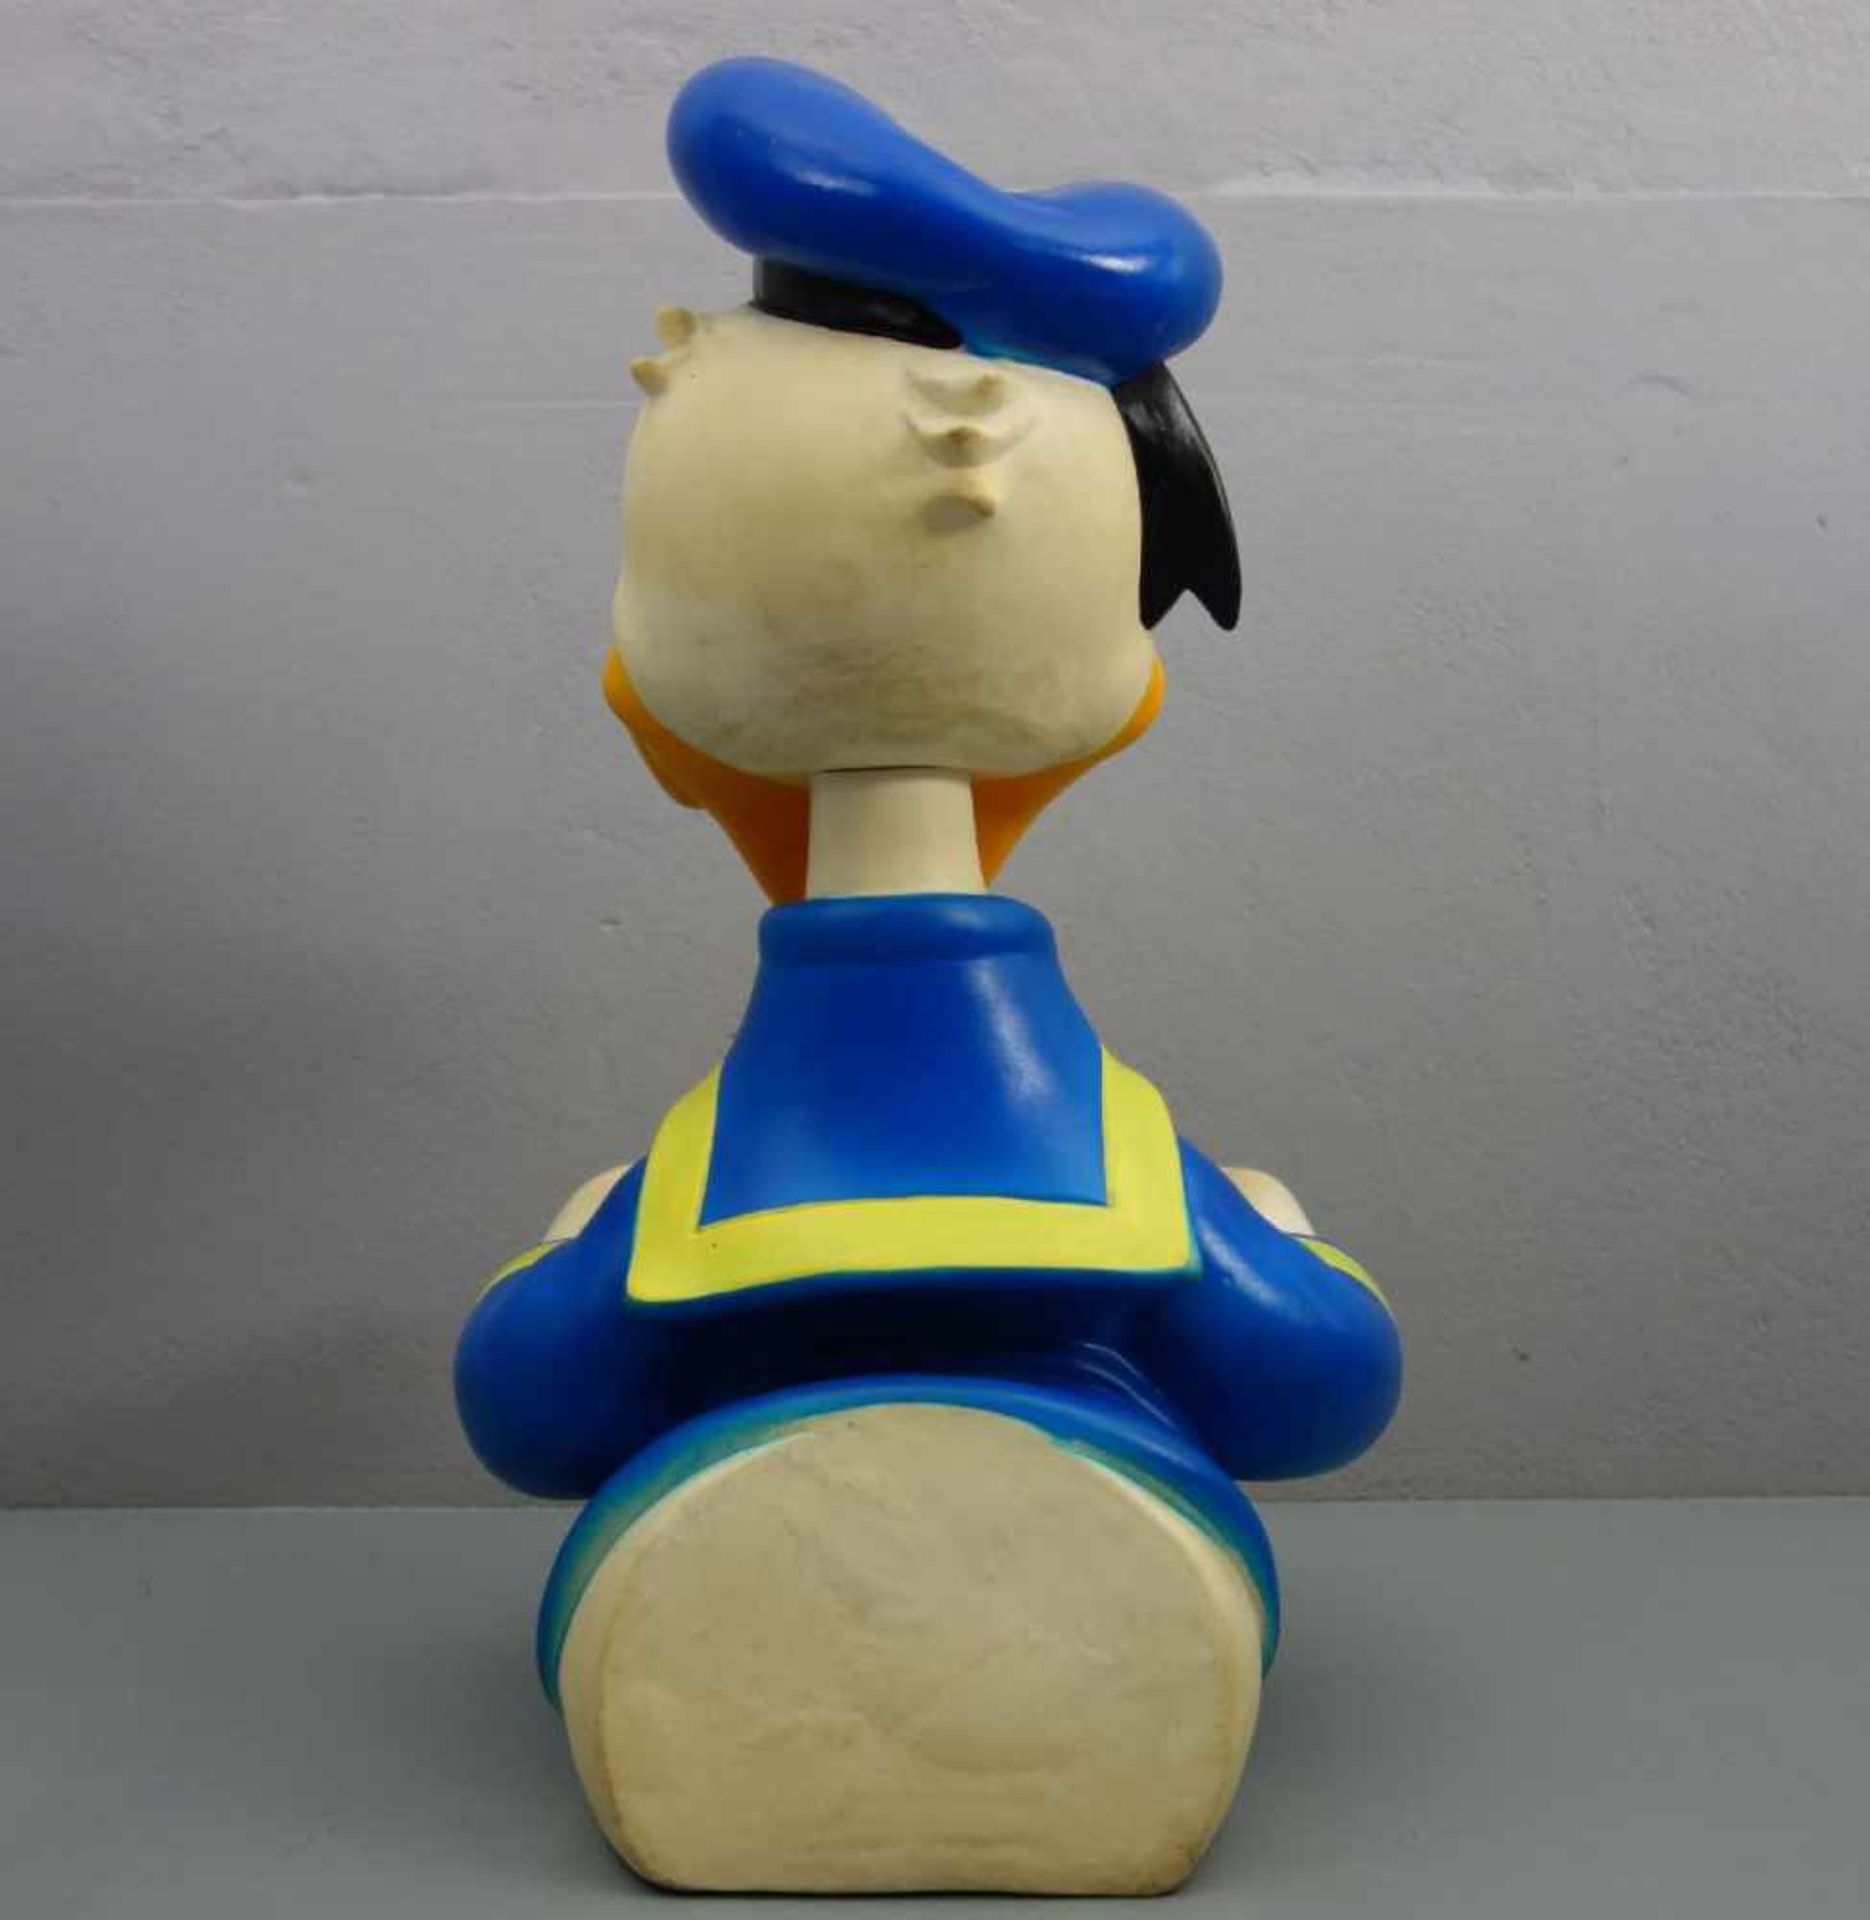 WALT DISNEY - WERBEAUFSTELLER / MERCHANDISE "Donald Duck", Thermoplastik, farbig gefasst. - Bild 3 aus 4